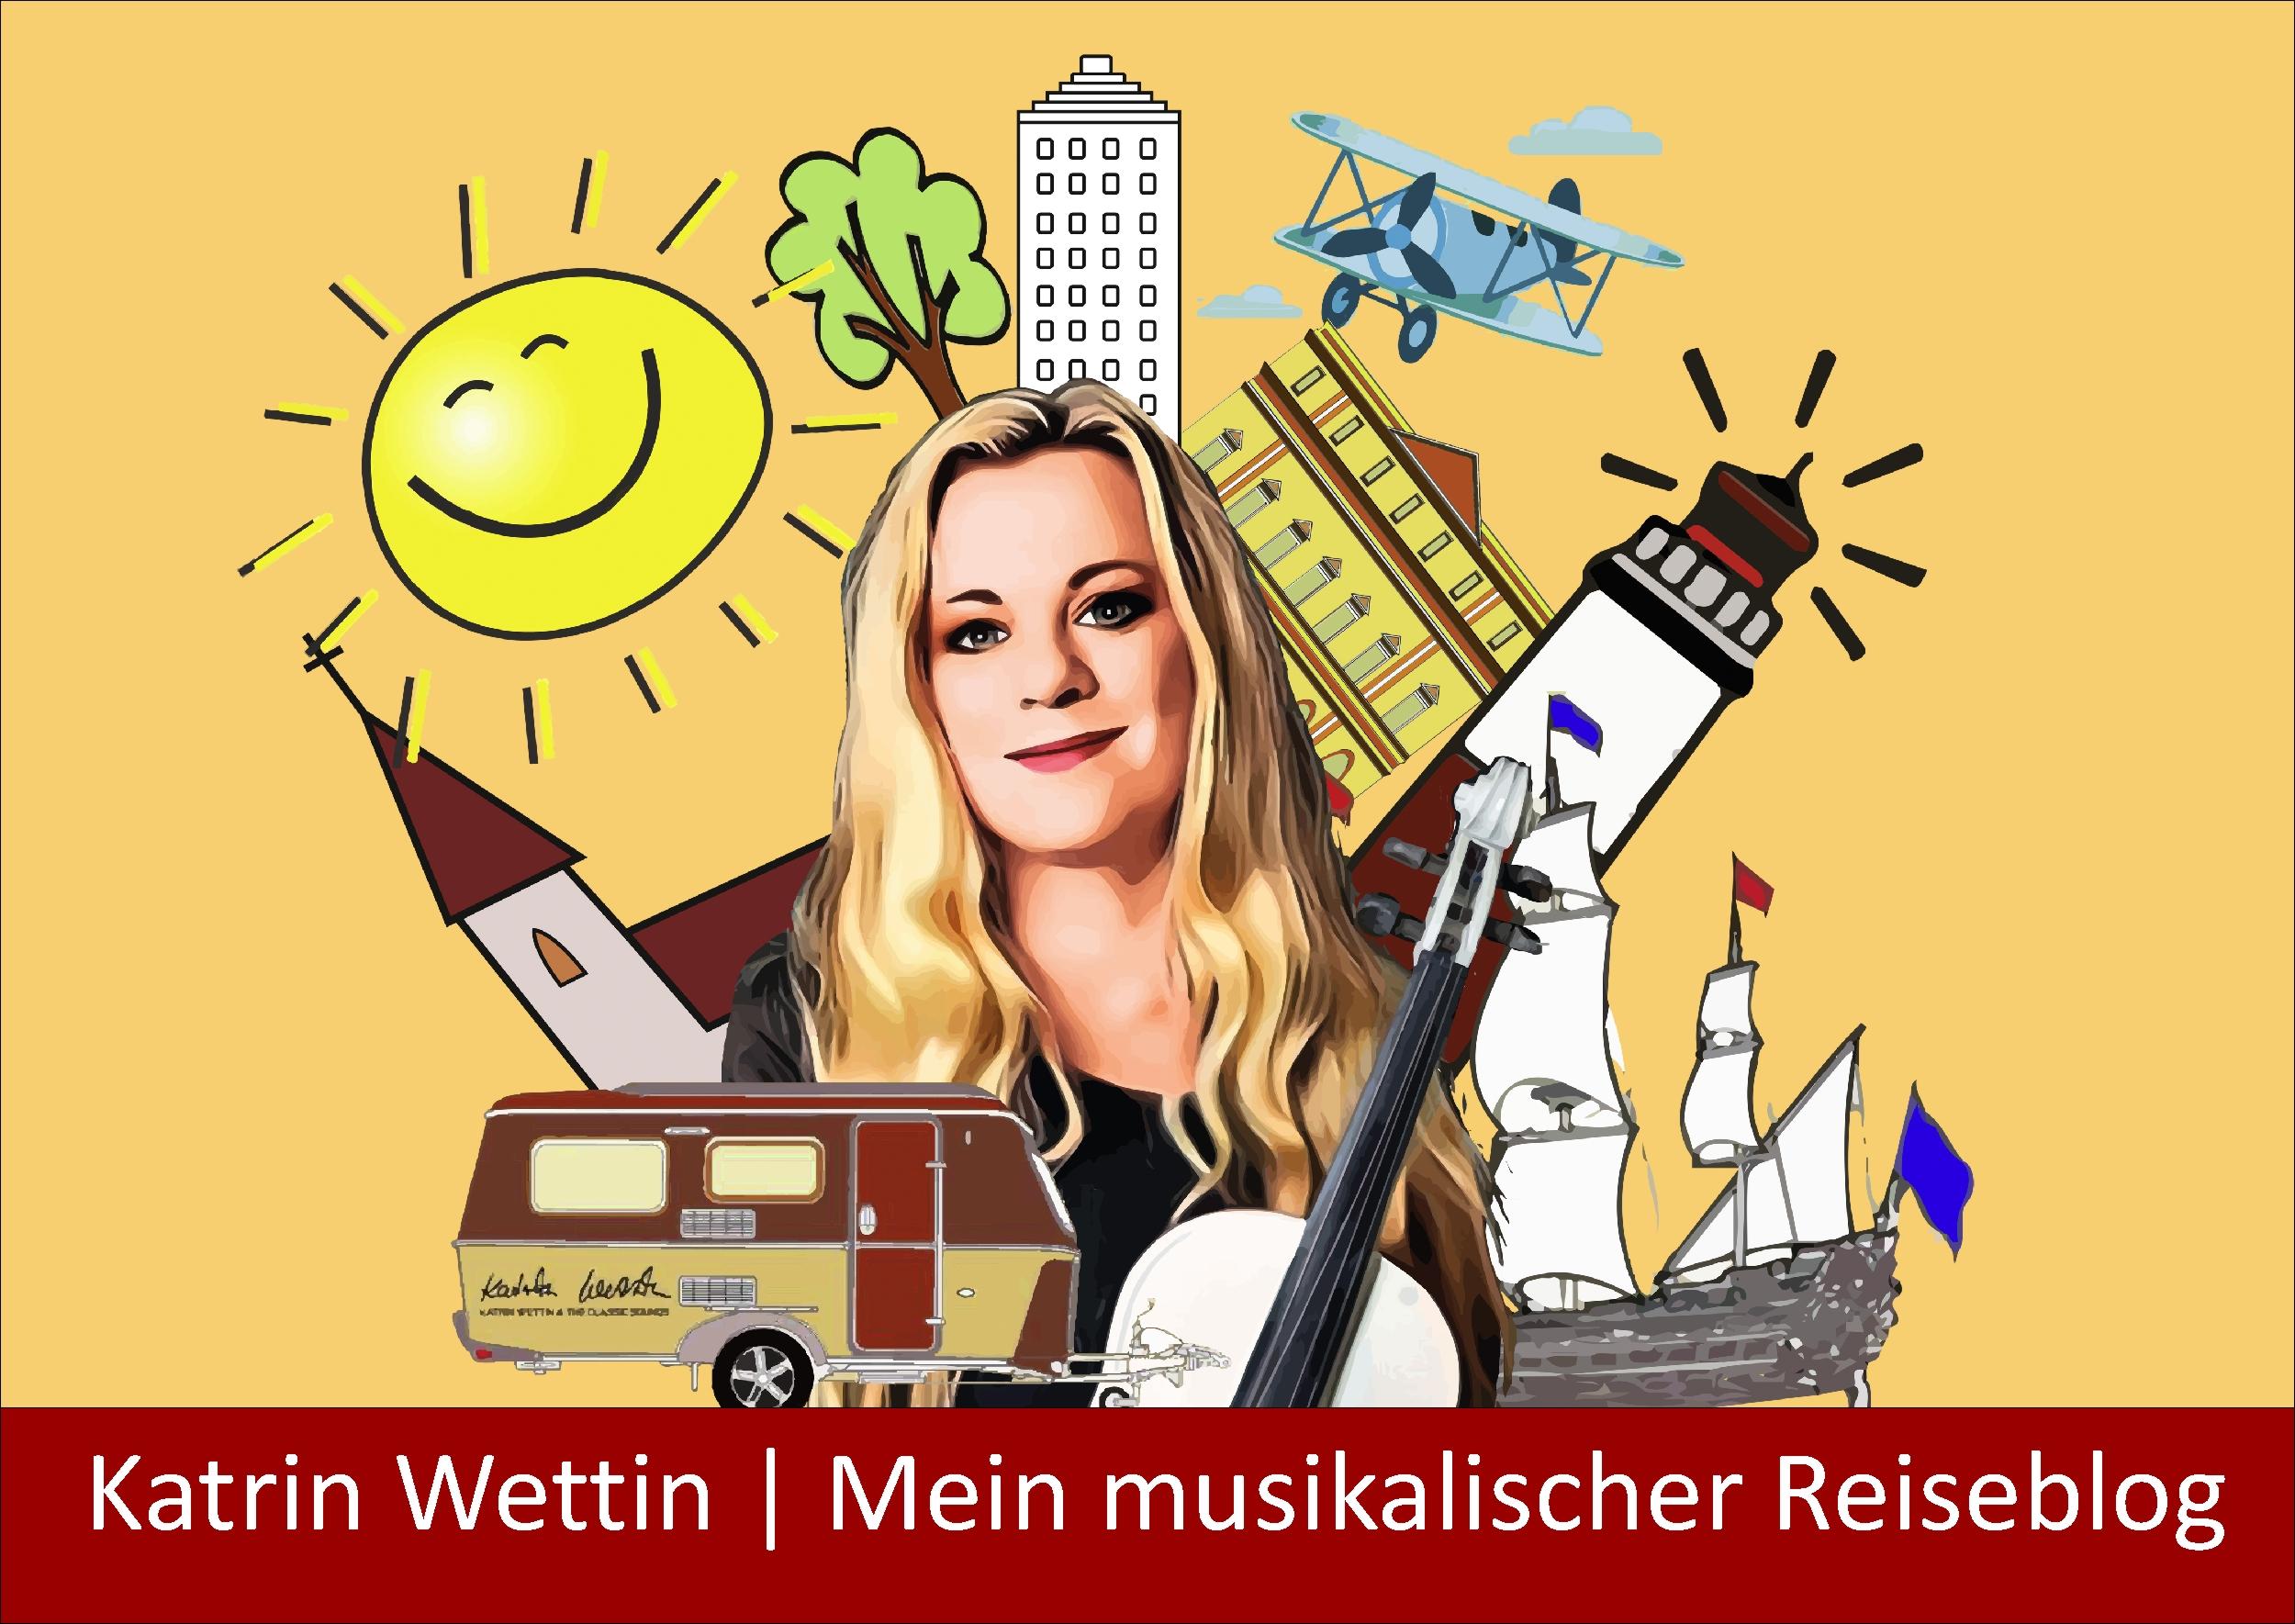 Katrin Wettin | Mein musikalischer Reiseblog